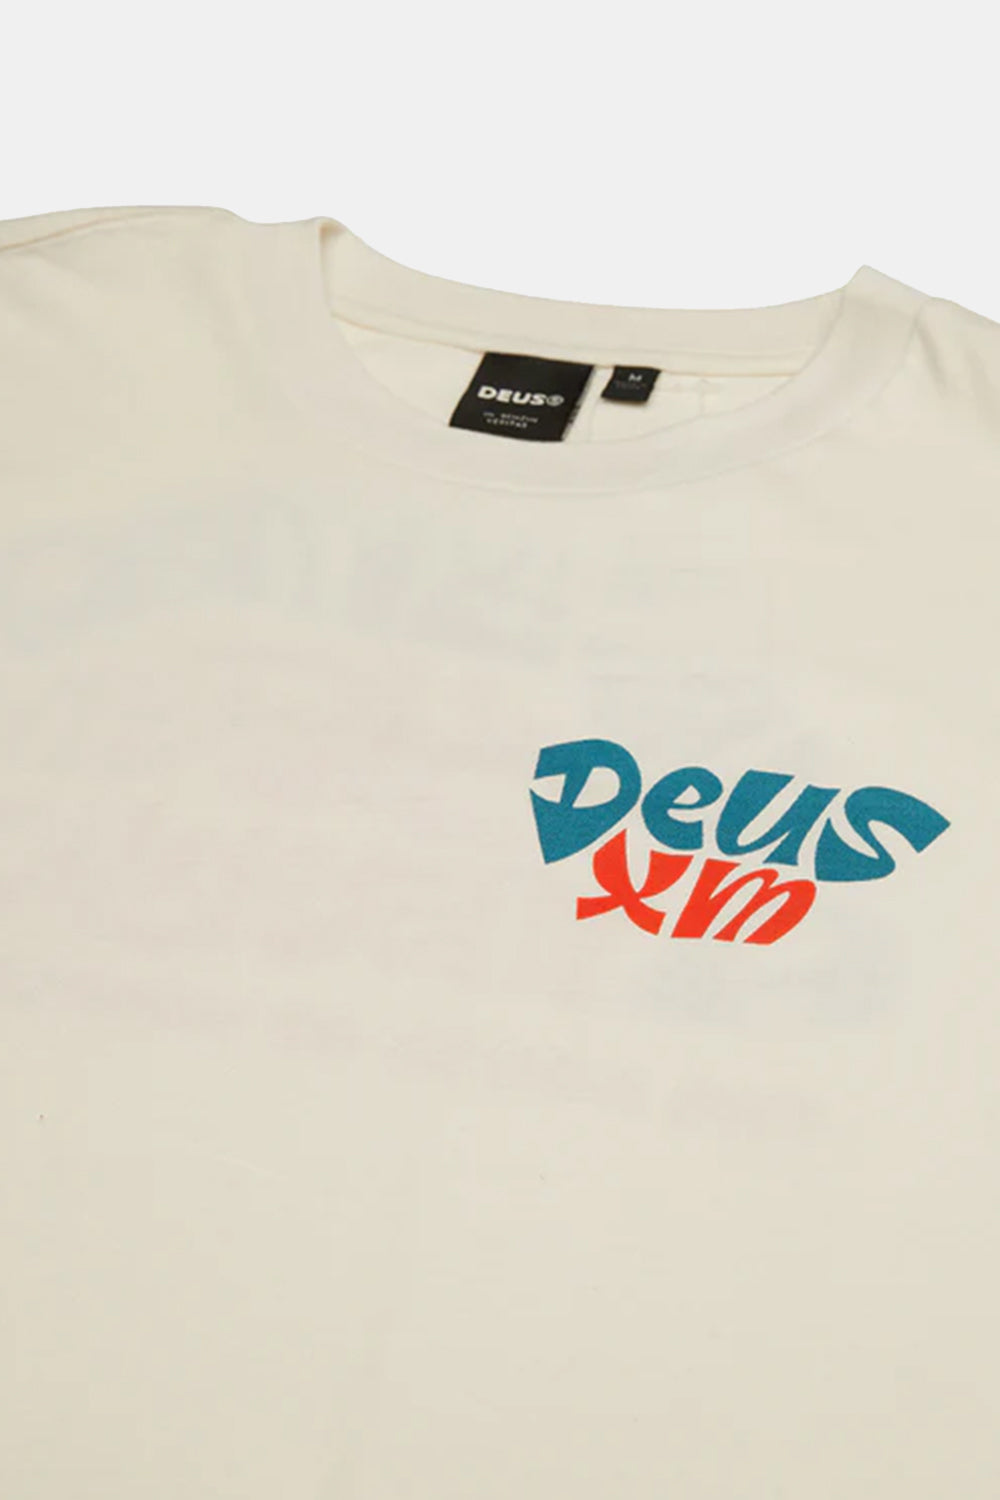 Deus Tables T-shirt (Vintage hvid)